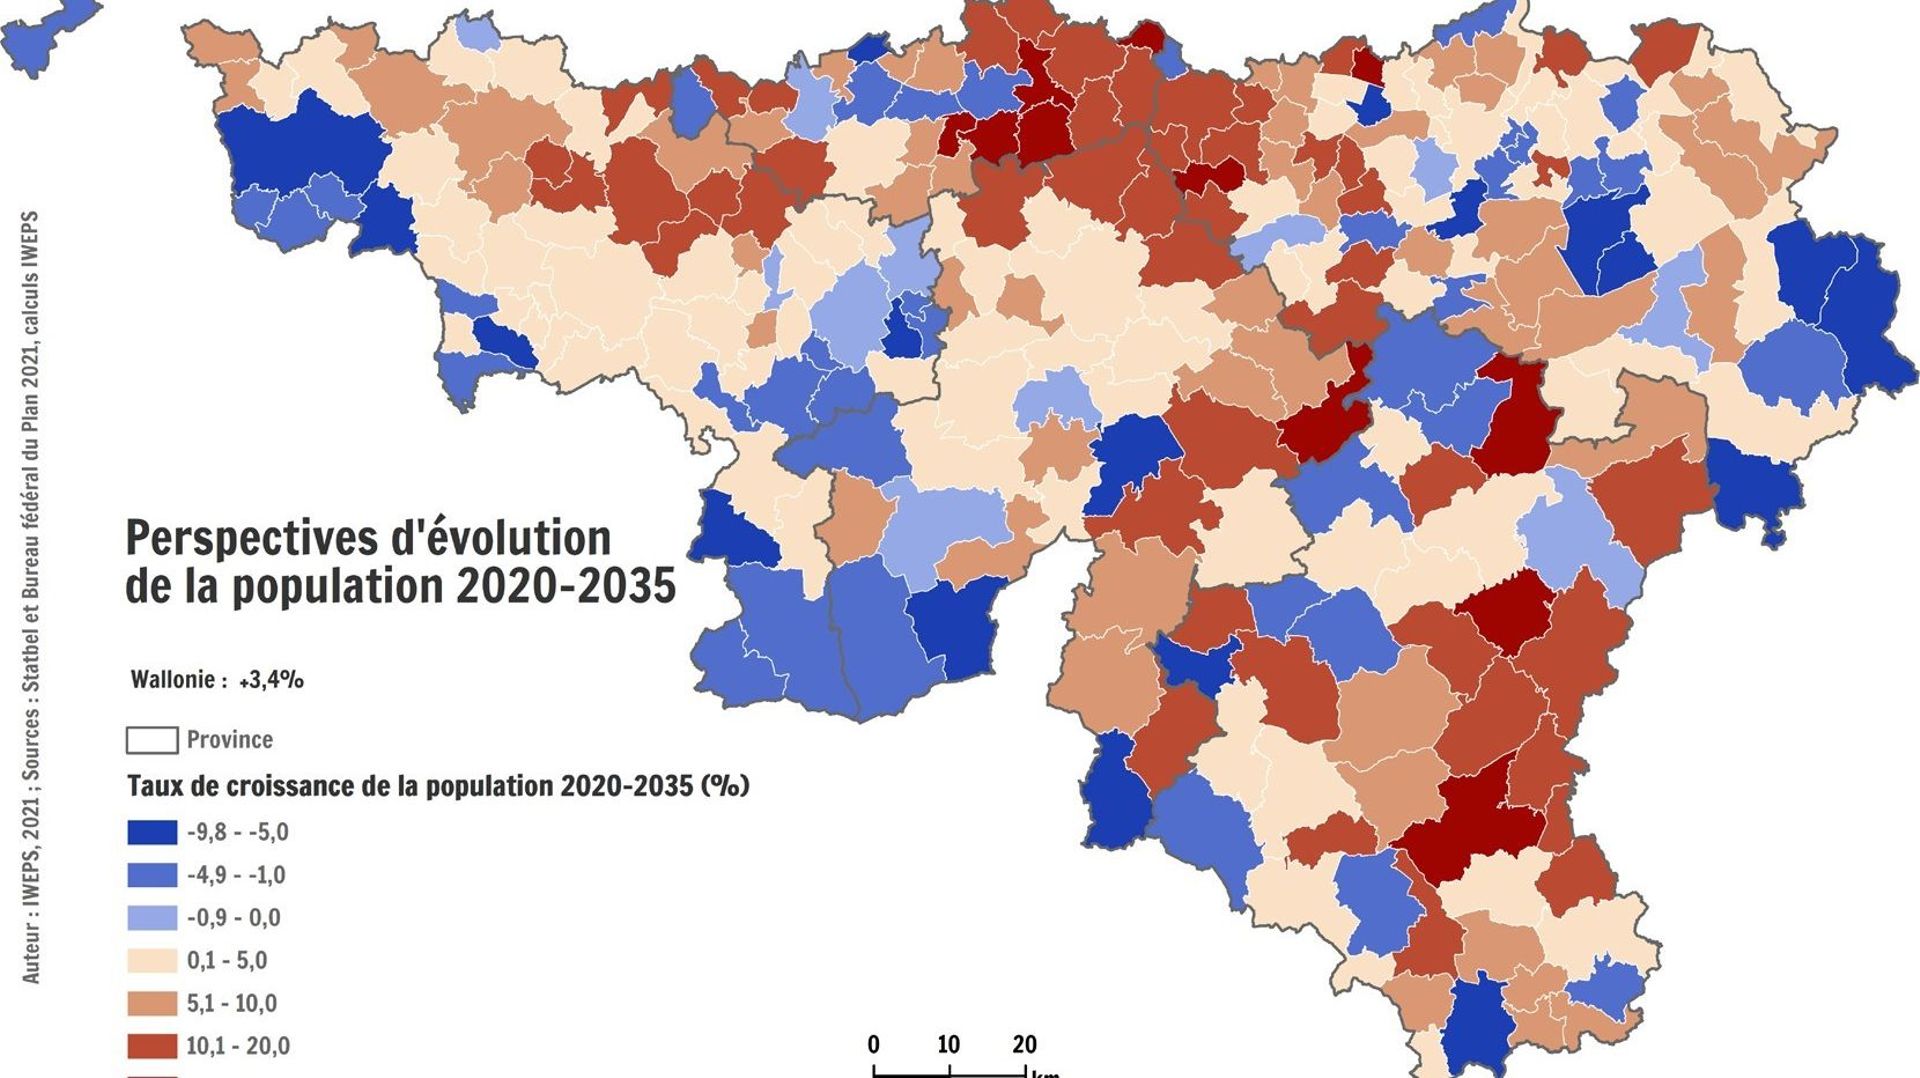 La population dans les communes aux alentours de Bruxelles et du Luxembourg va encore augmenter mais certaines communes plus rurales près des grands axes routiers aussi.